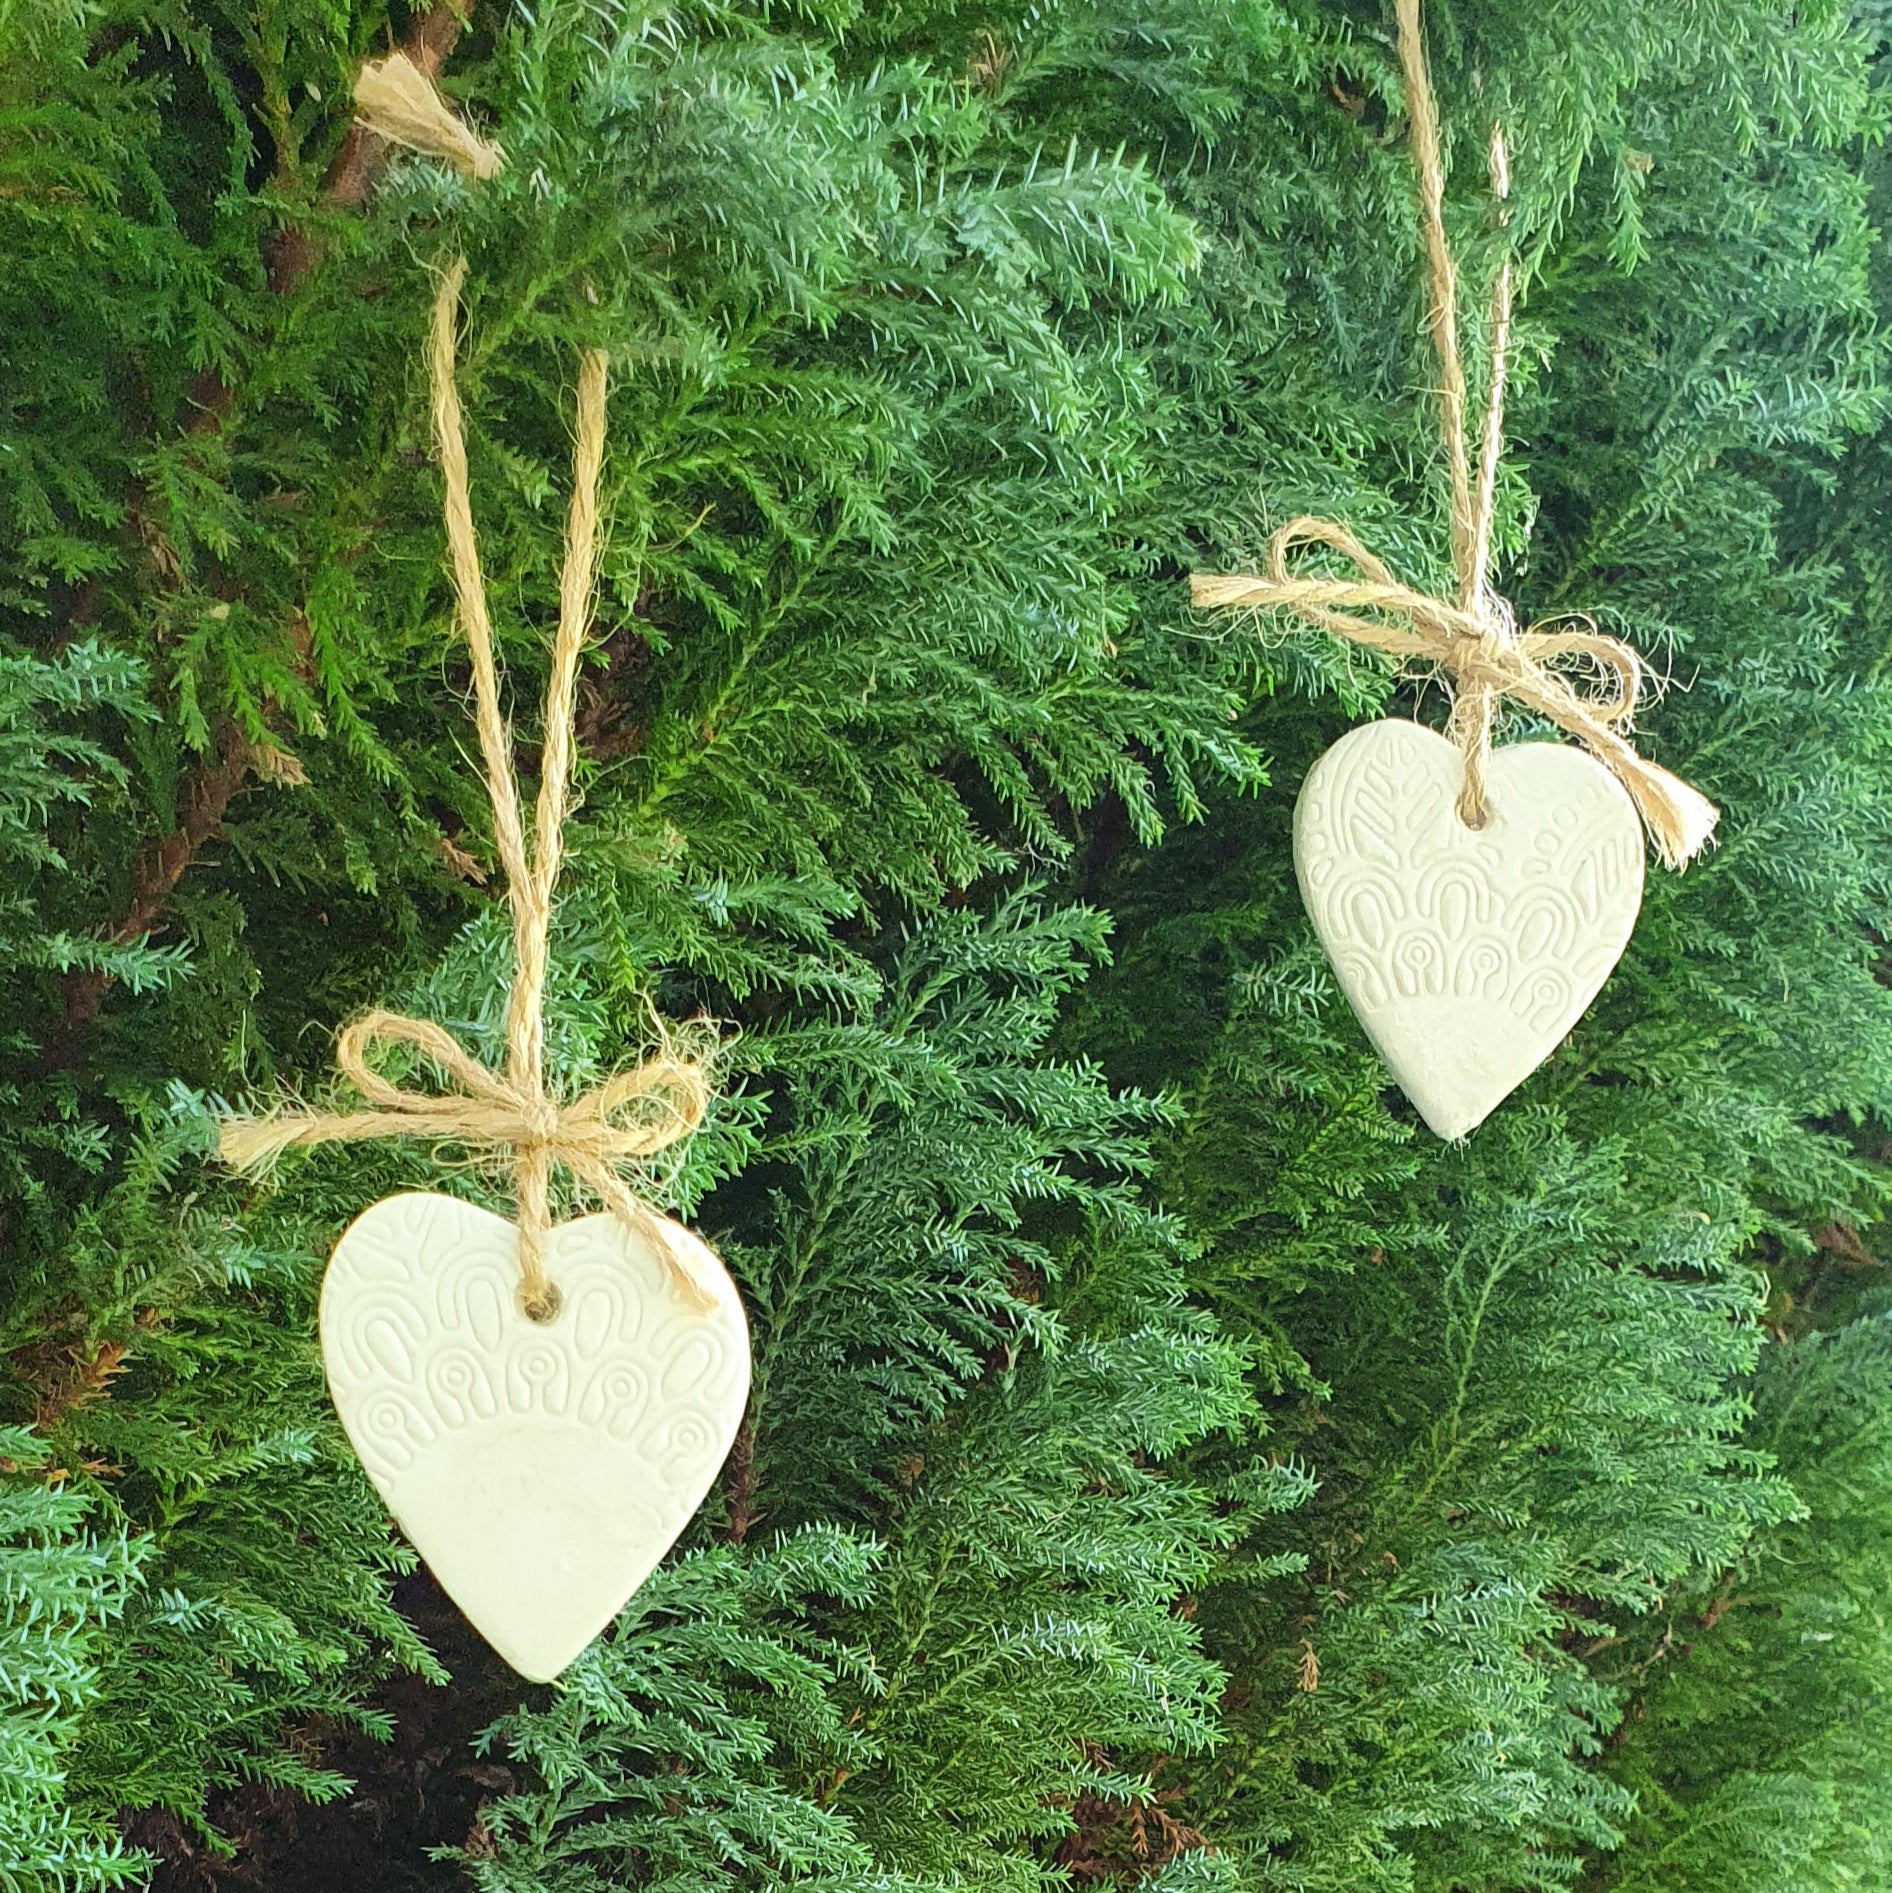 Mini Clay tree decorations. Hearts